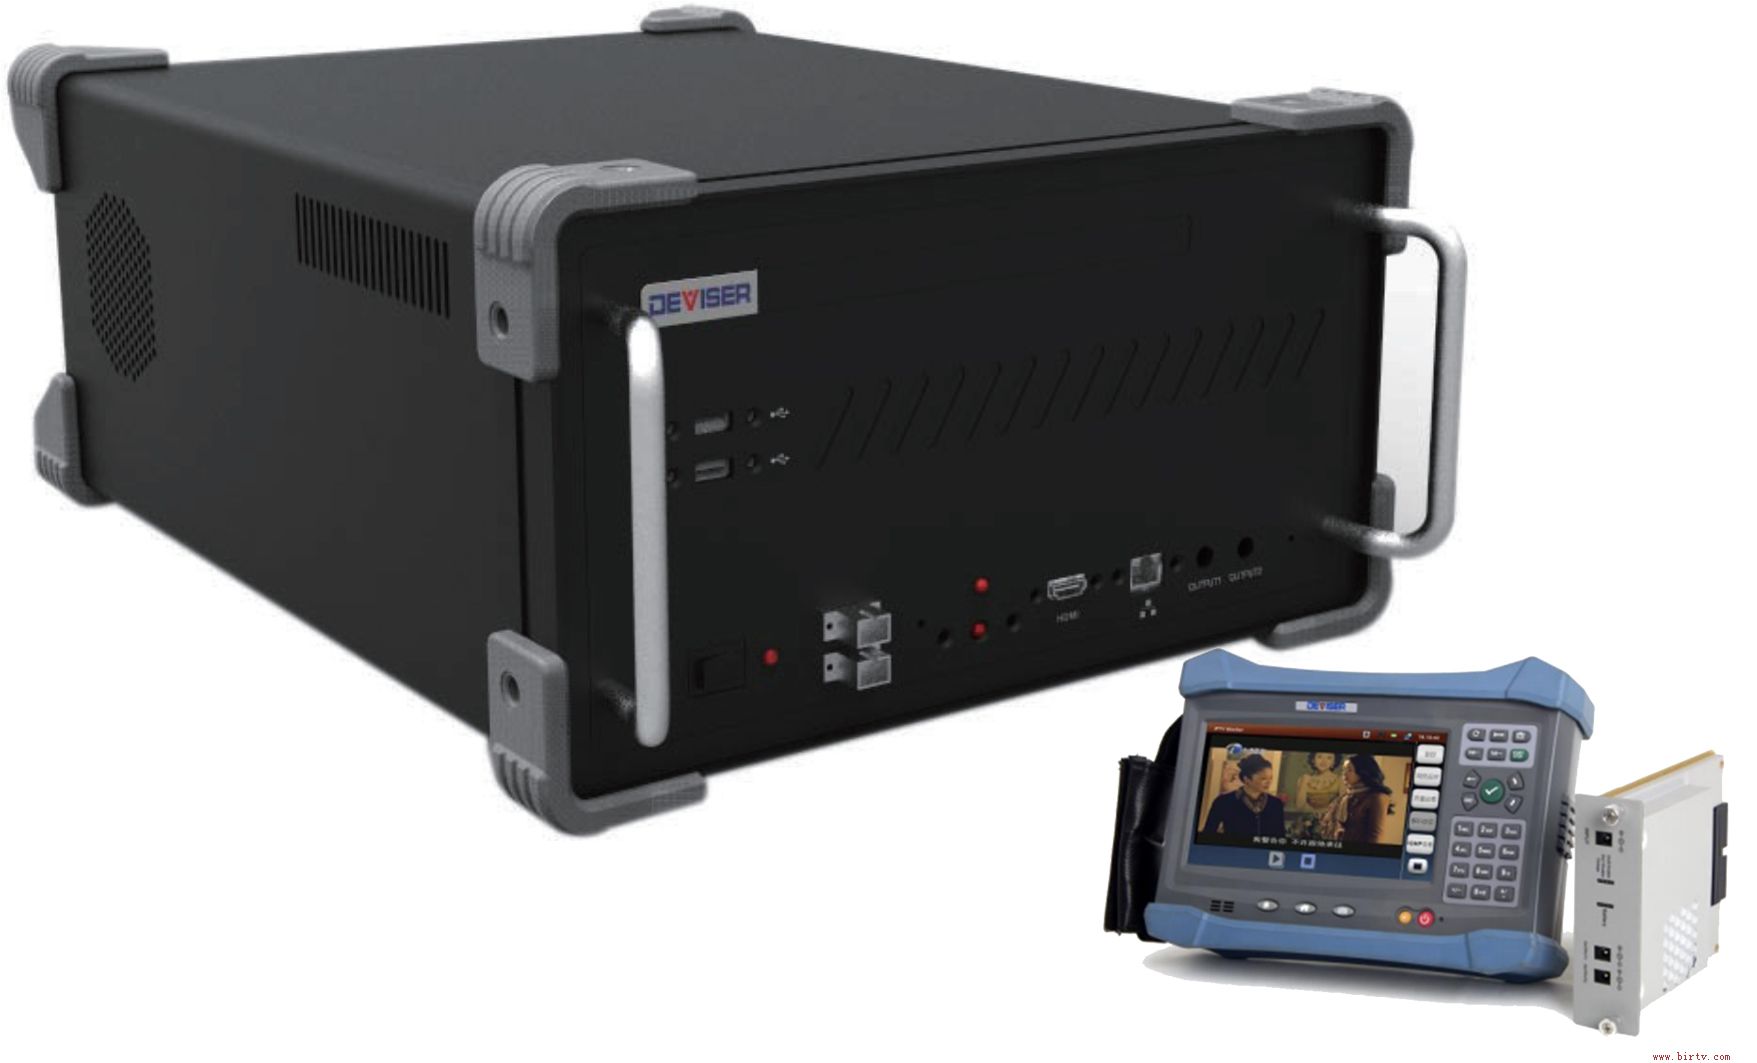 融合视频质量与安全监控-E9600三网融合终端-EPG自动化测试系统图1